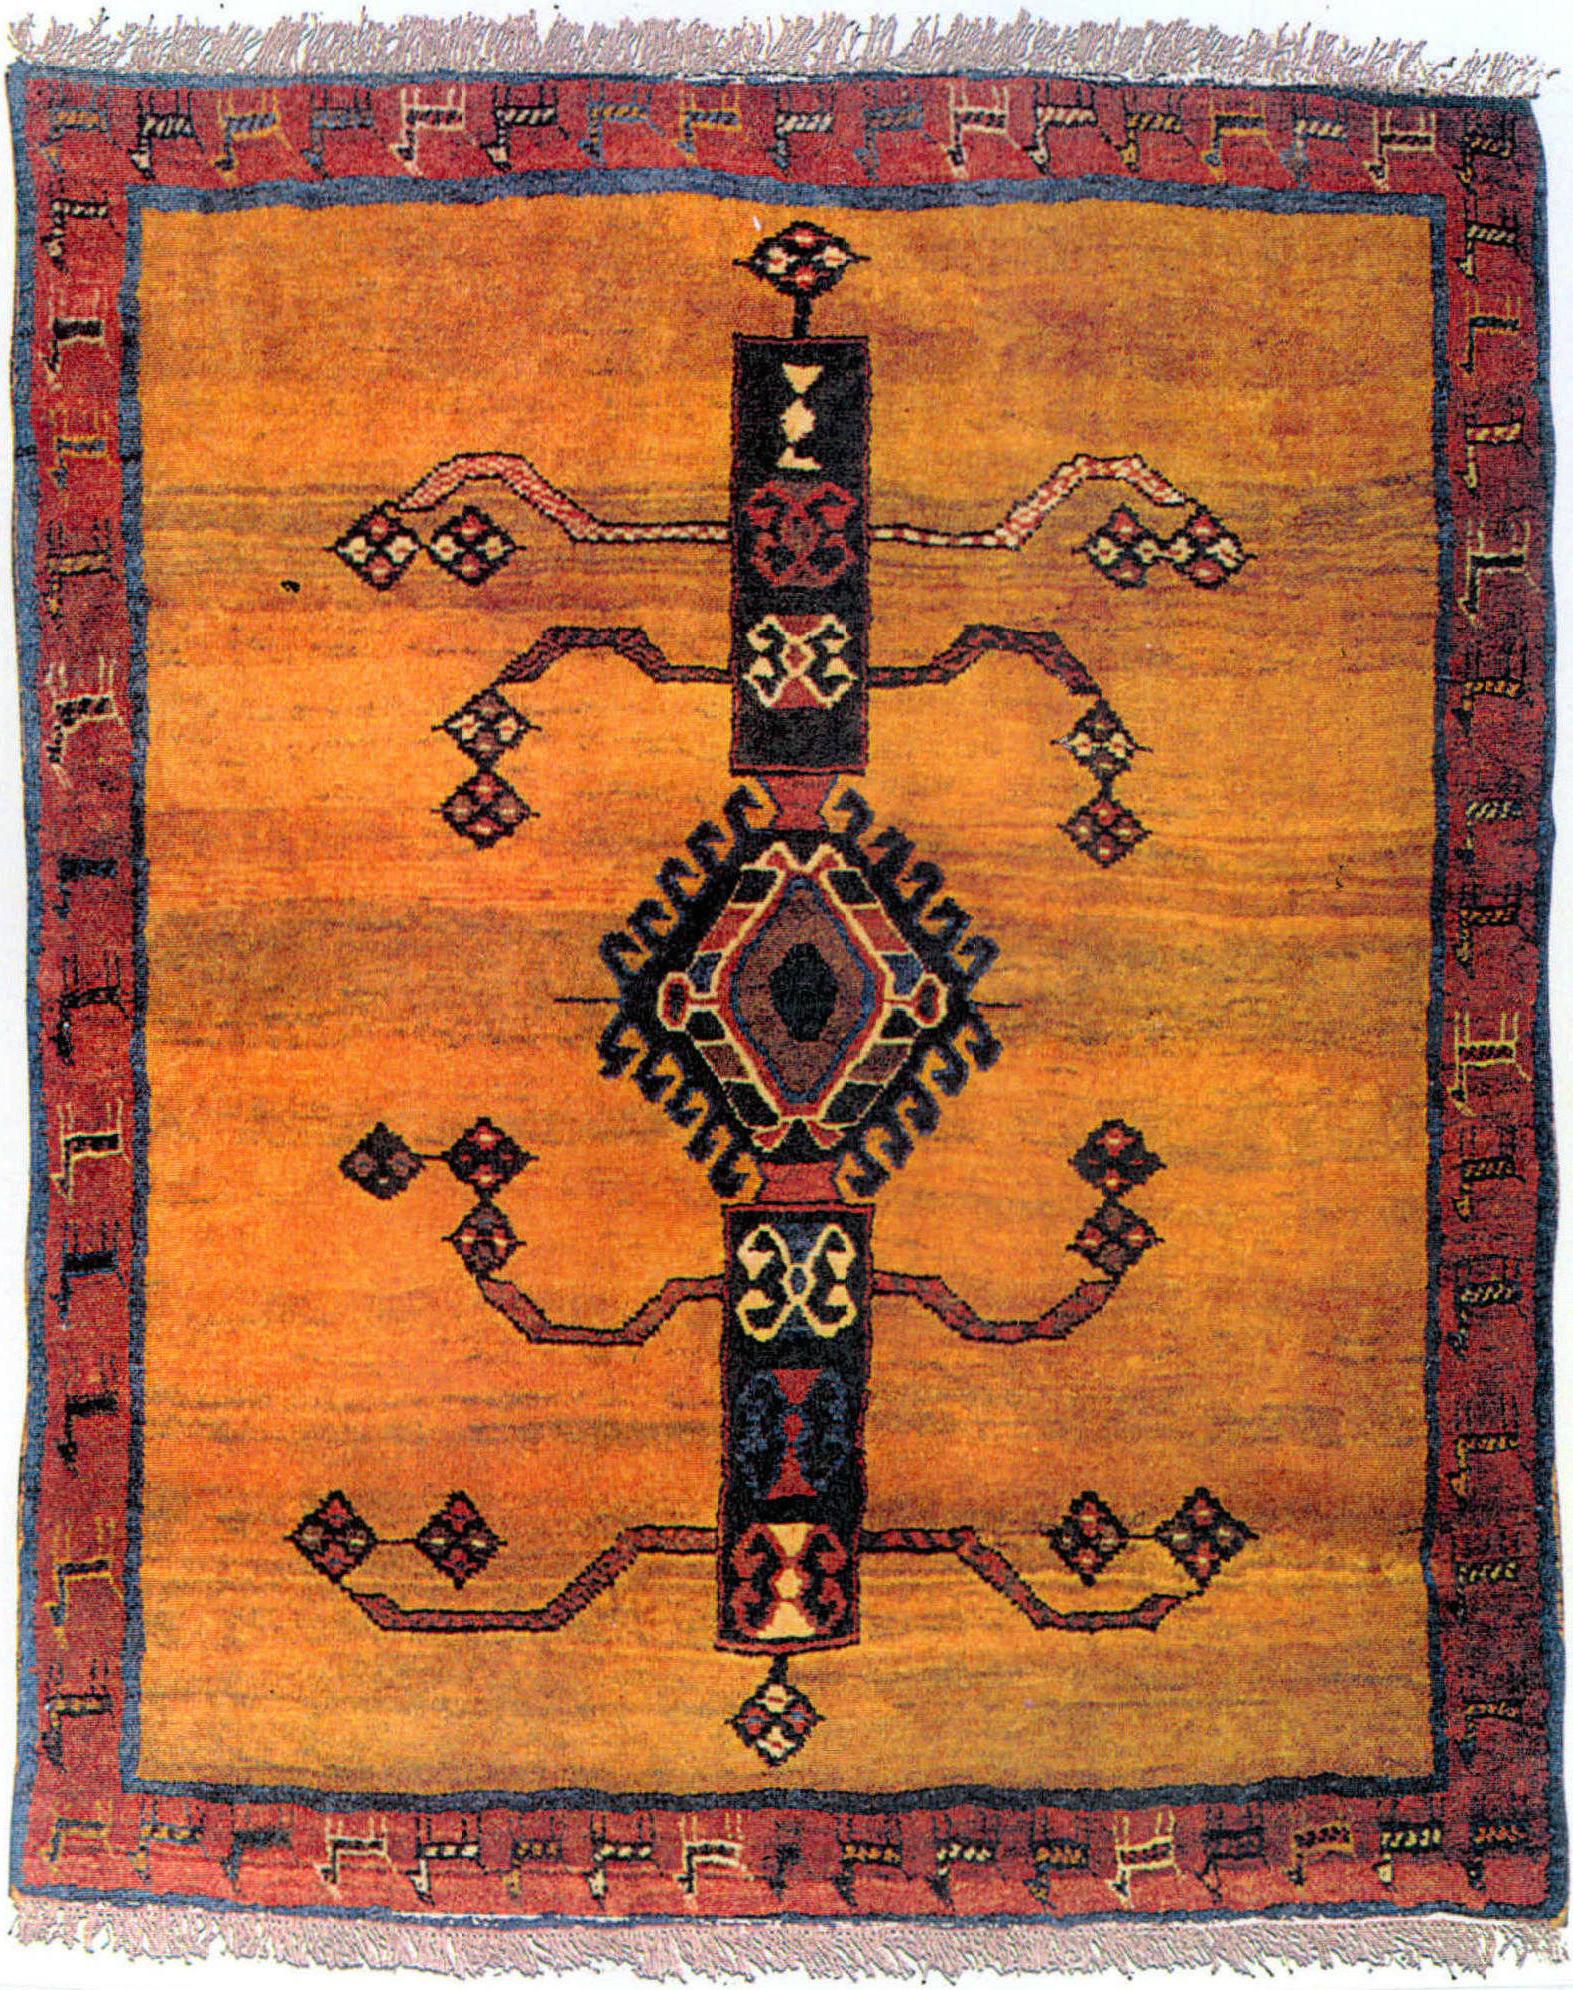 19世纪图案类似蜘蛛的波斯地毯样式